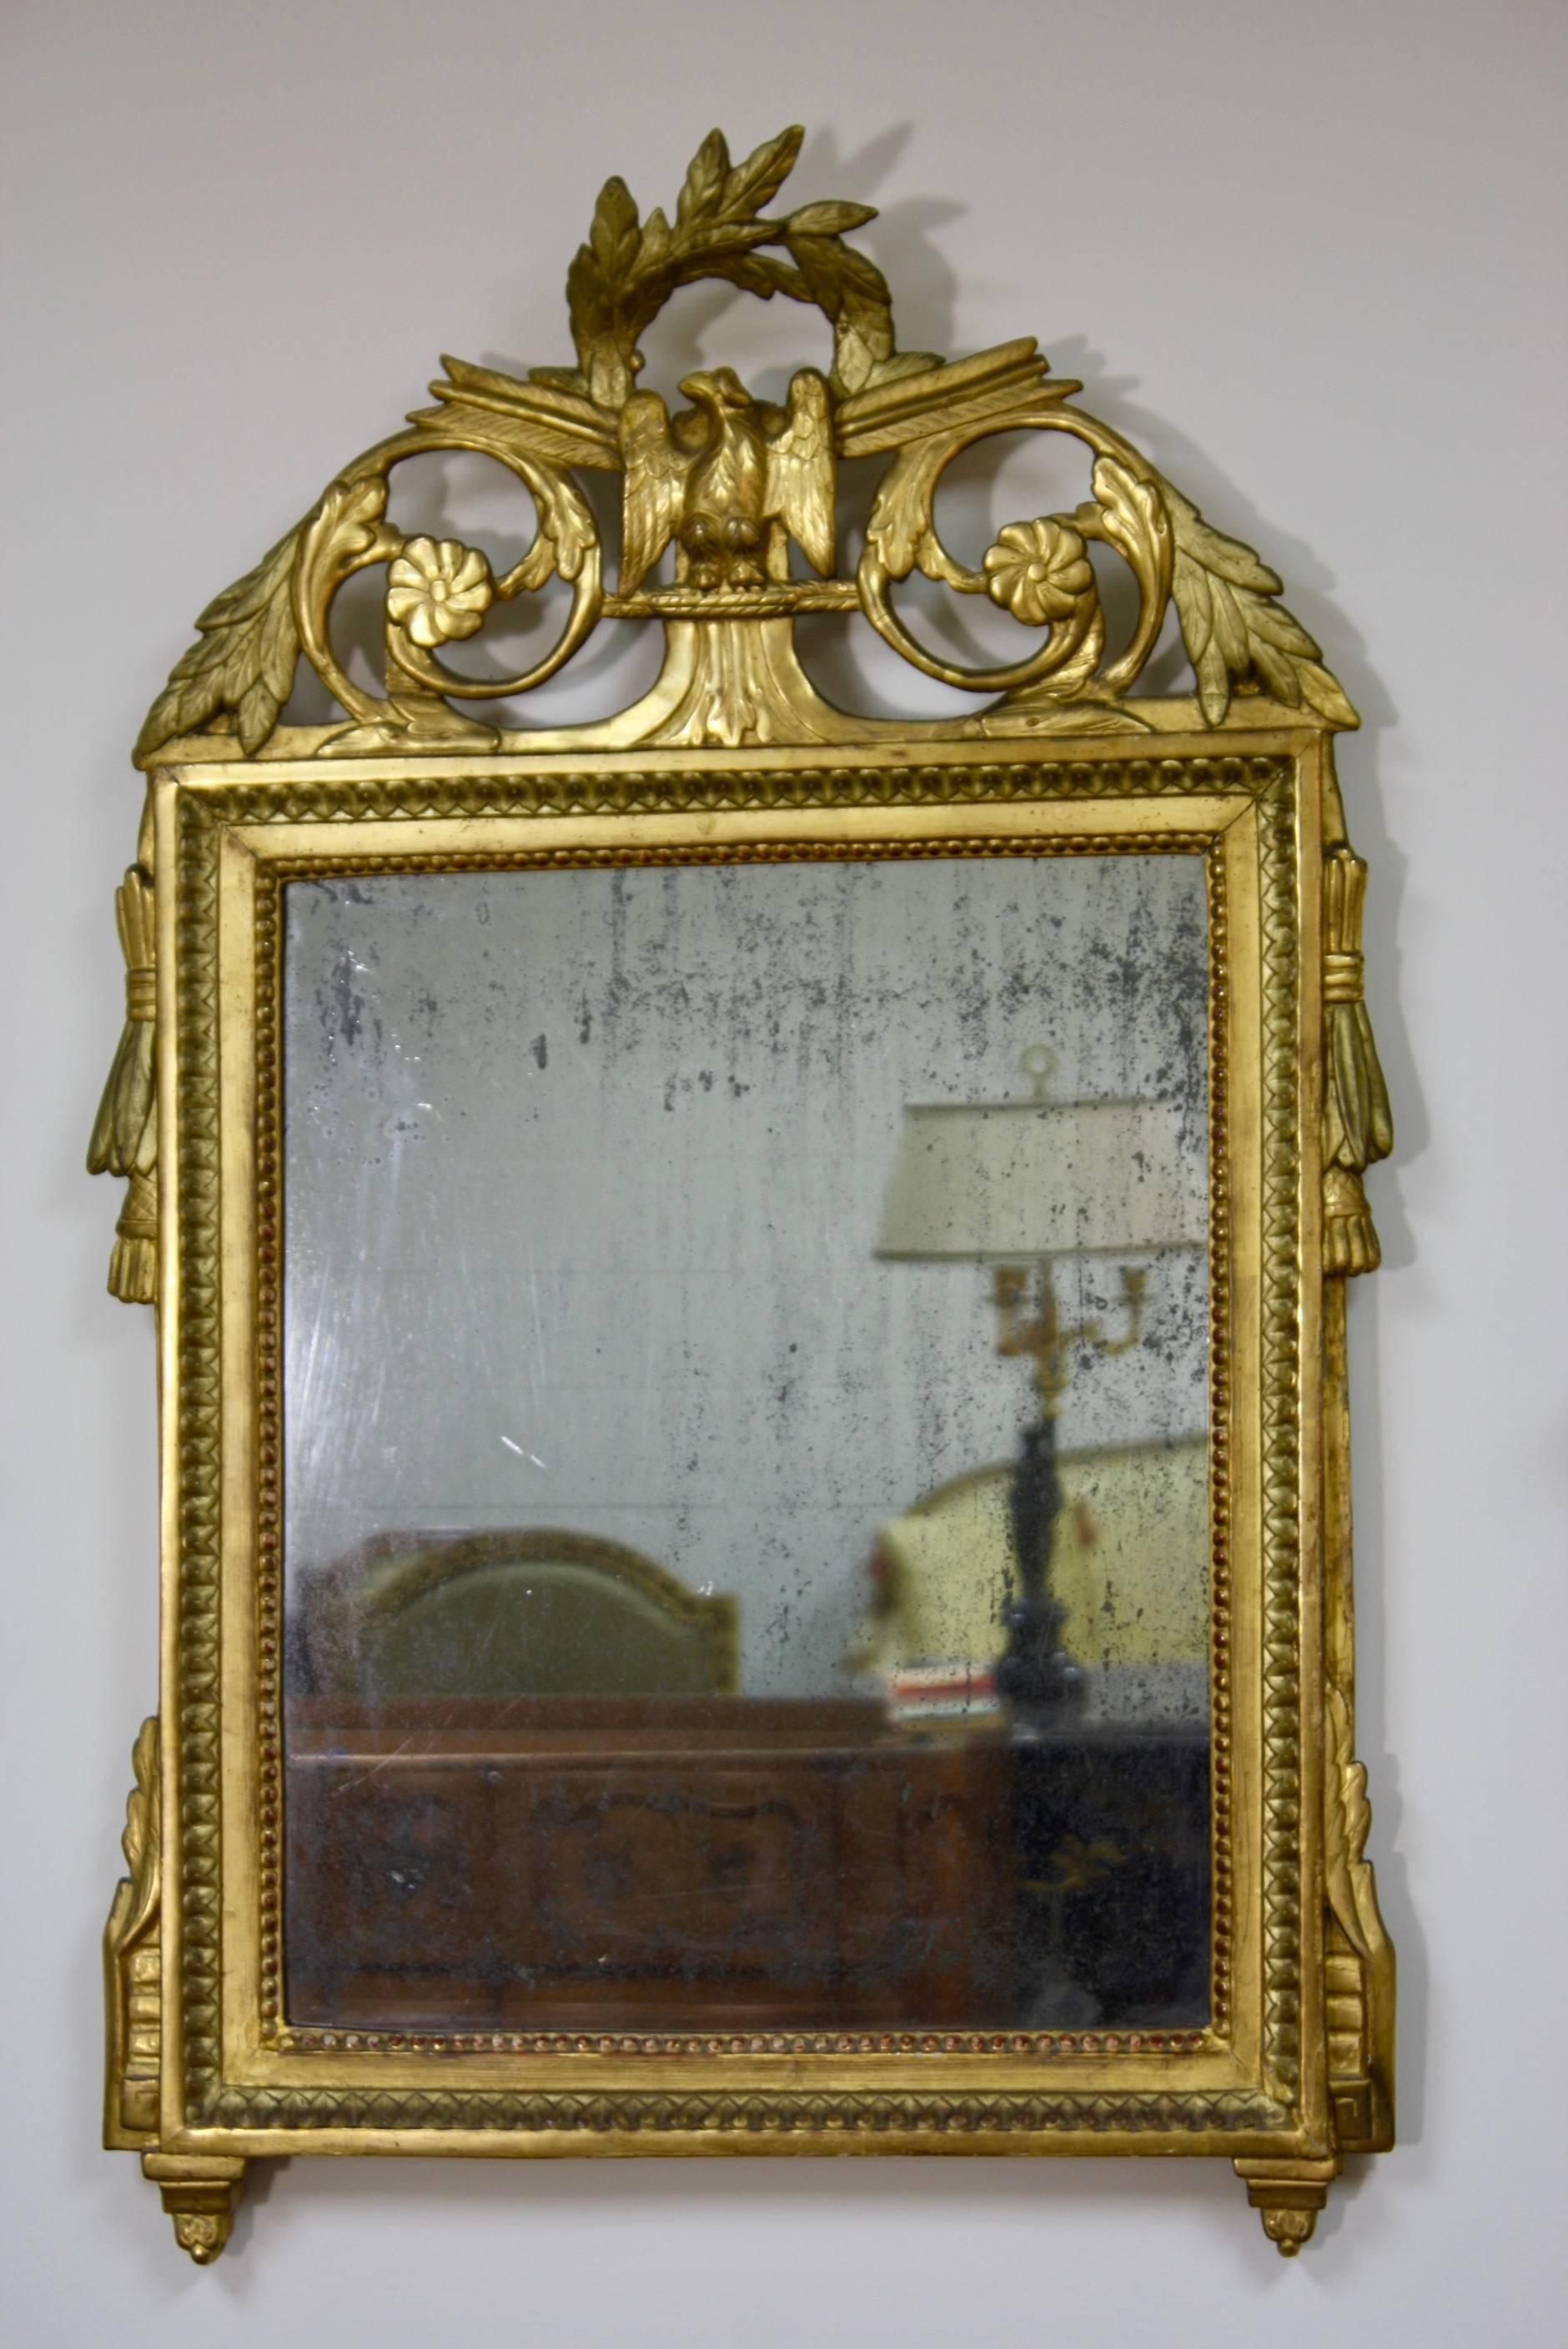 Miroir trumeau en bois doré d'époque Louis XVI, vers 1780, avec des détails néoclassiques, dont une couronne de laurier et un aigle sur le cartouche, verre au mercure d'origine et dossier en bois.